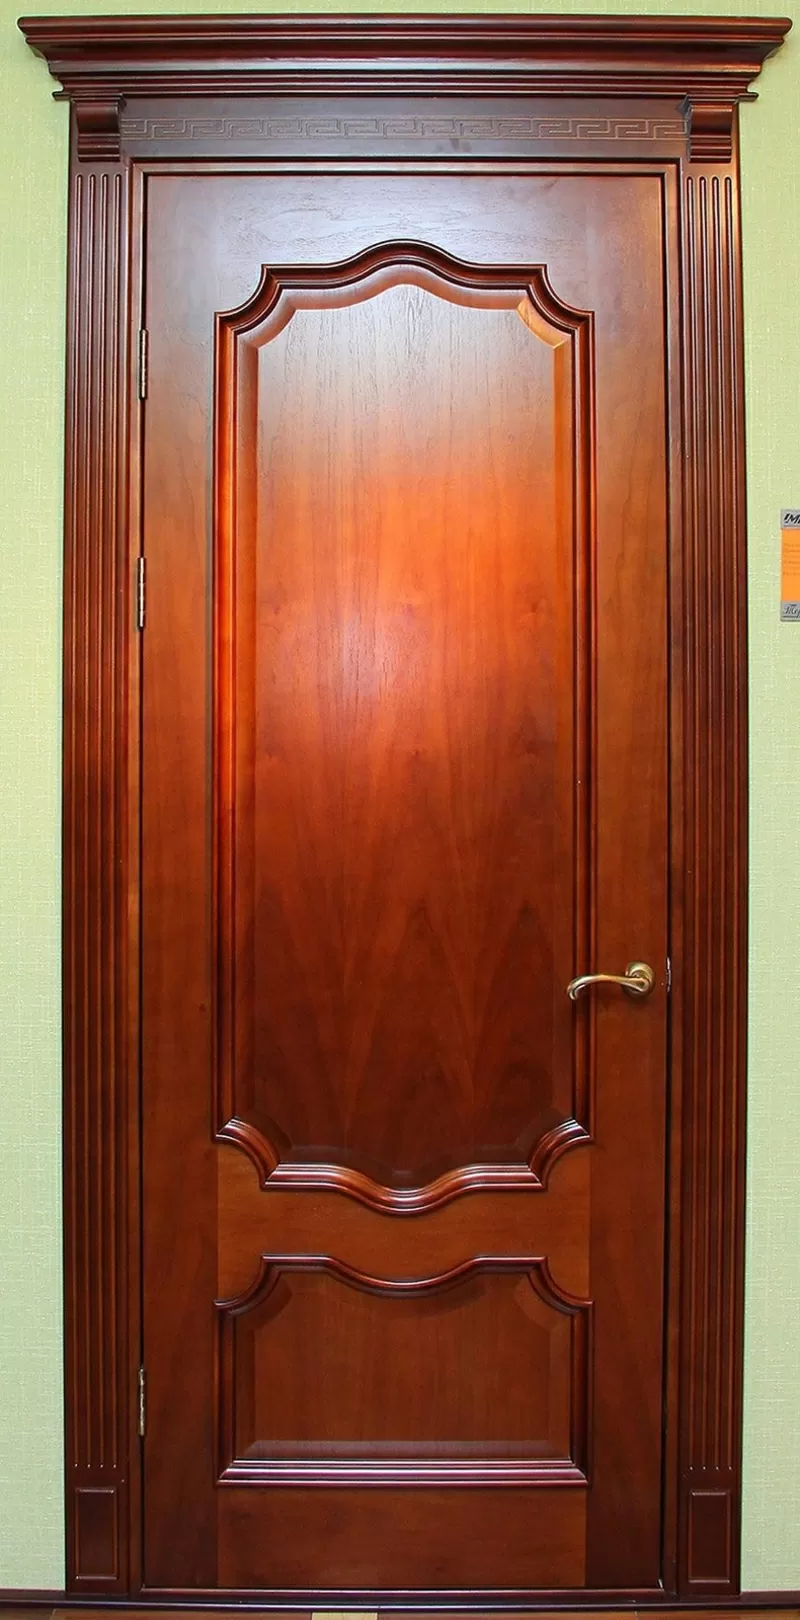 Межкомнатные шпонированные двери,  железные входные двери в г. Шымкент,  www.megaart.kz, т.д. Мега арт 2